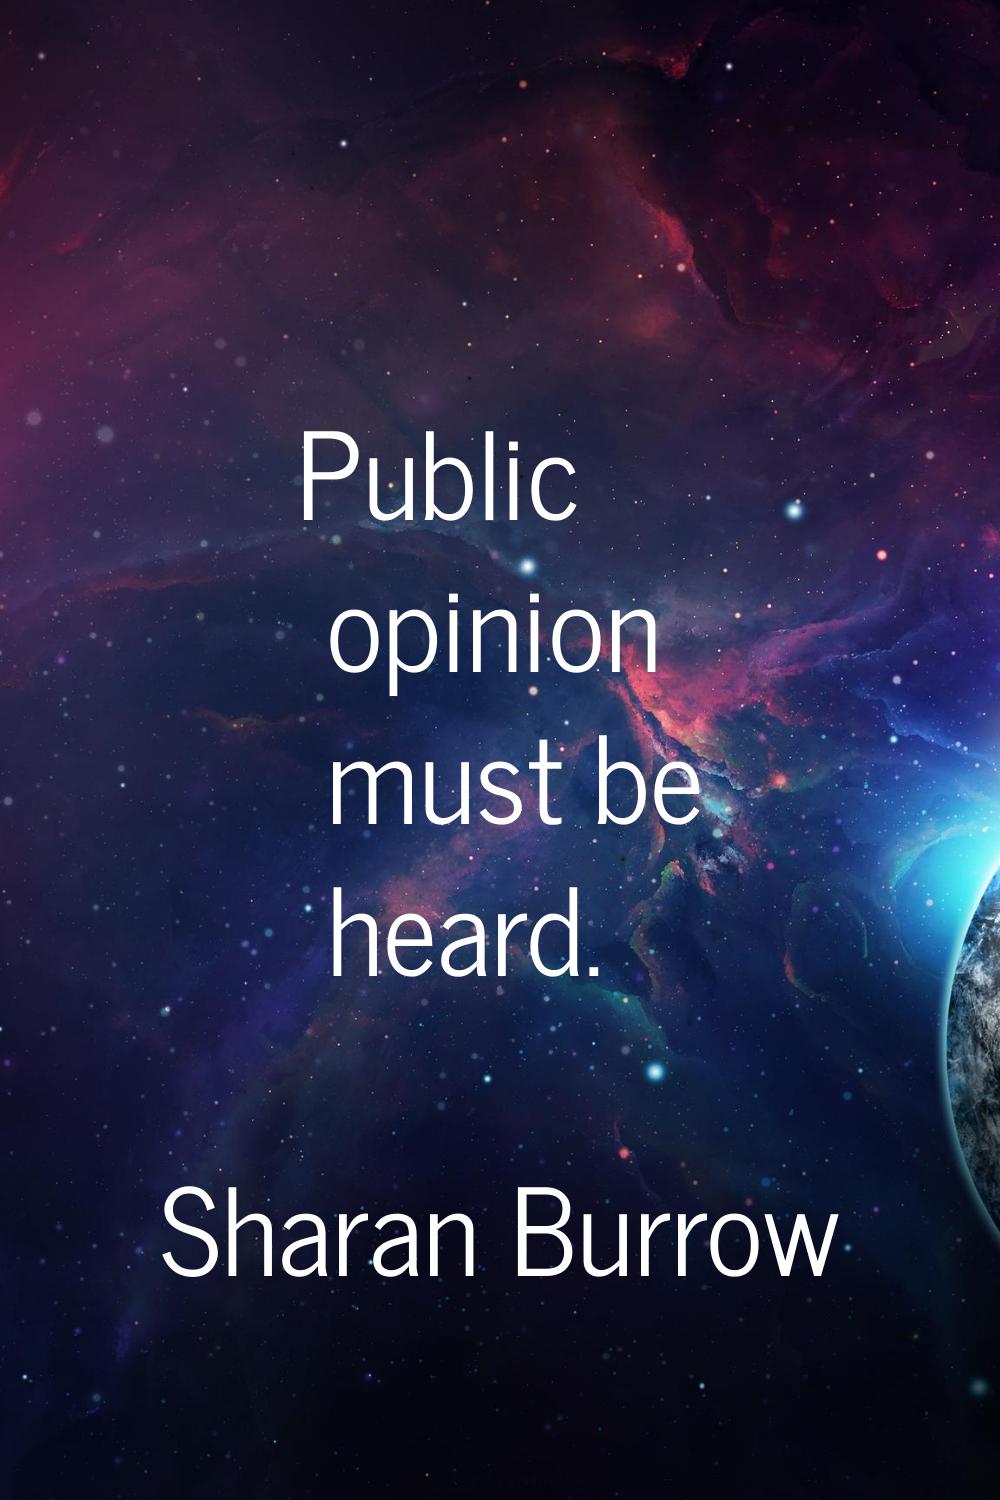 Public opinion must be heard.